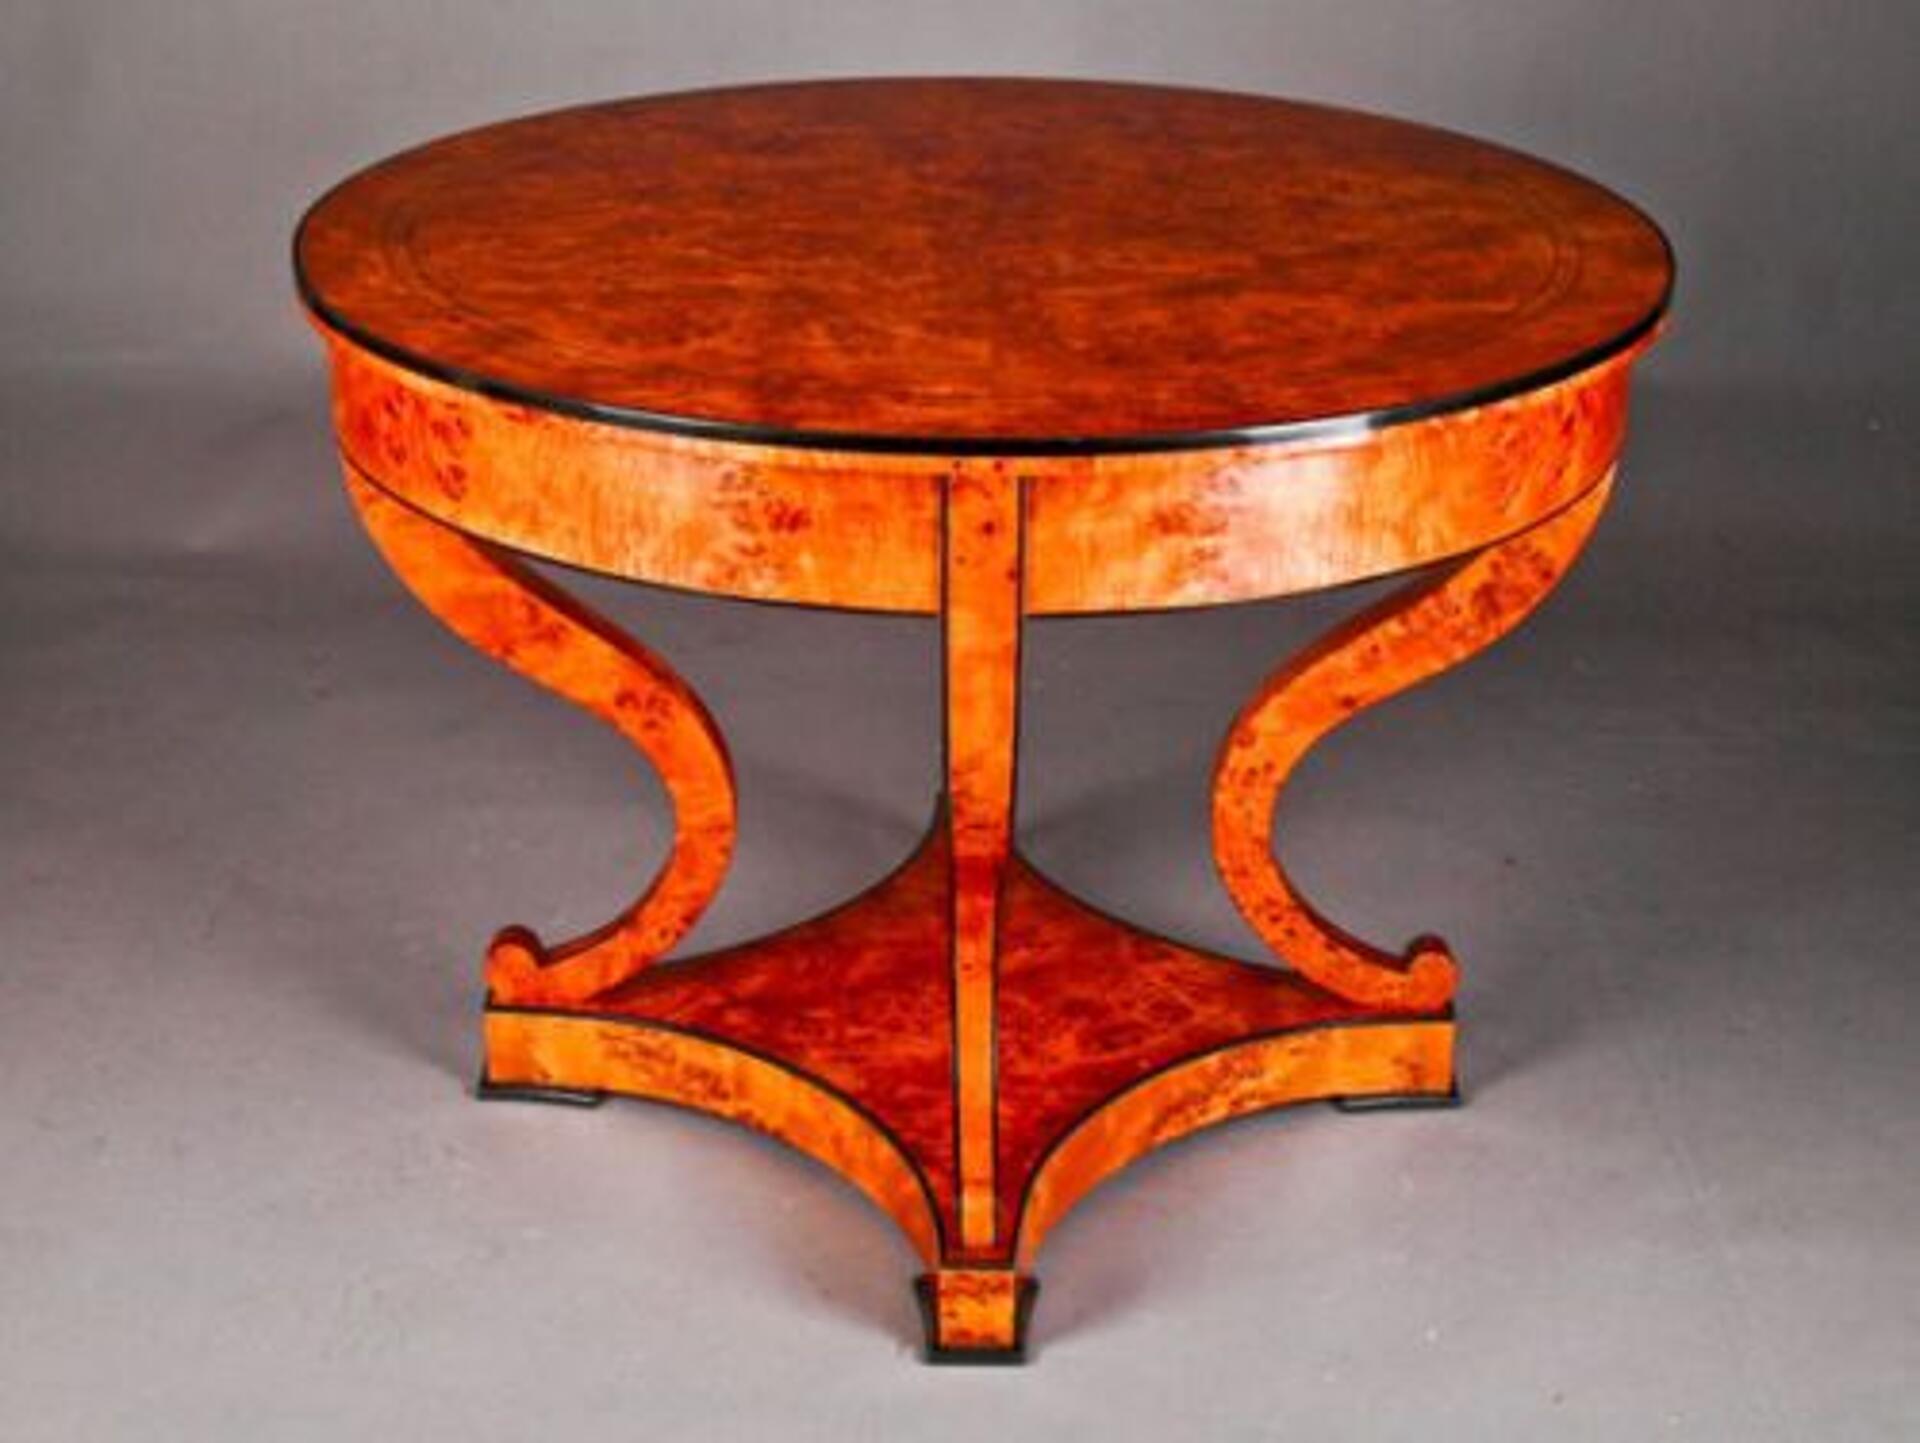 lussuoso tavolo rotondo di grandi dimensioni intarsiato con una pregiata radica di betulla manufatto di realizzazione made in Italy 4 gambe sagomate